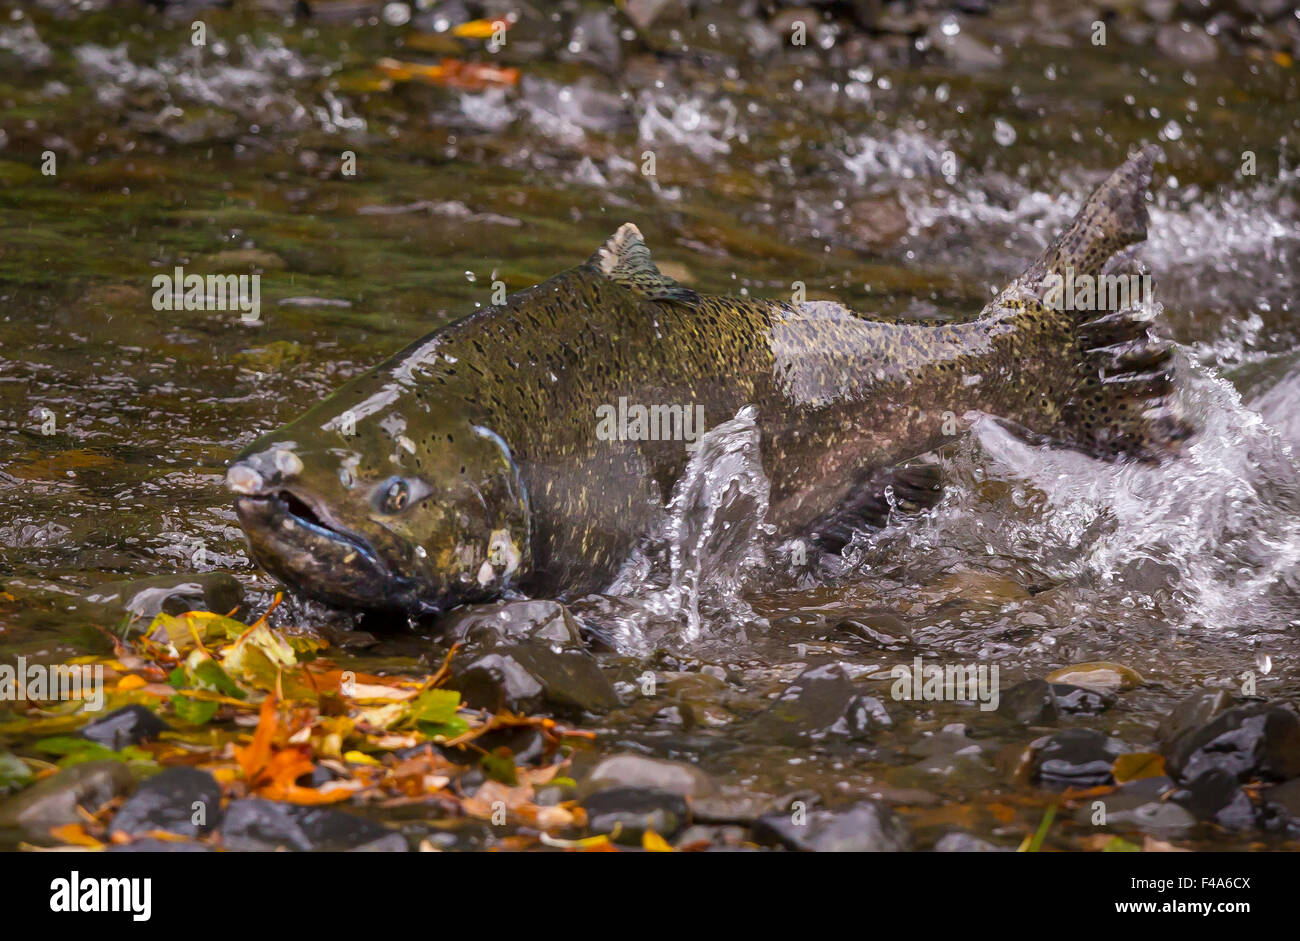 COLUMBIA RIVER GORGE, Oregon, USA - salmon run sur Eagle Creek. Nage du poisson à sa rivière natale pour y frayer. Banque D'Images